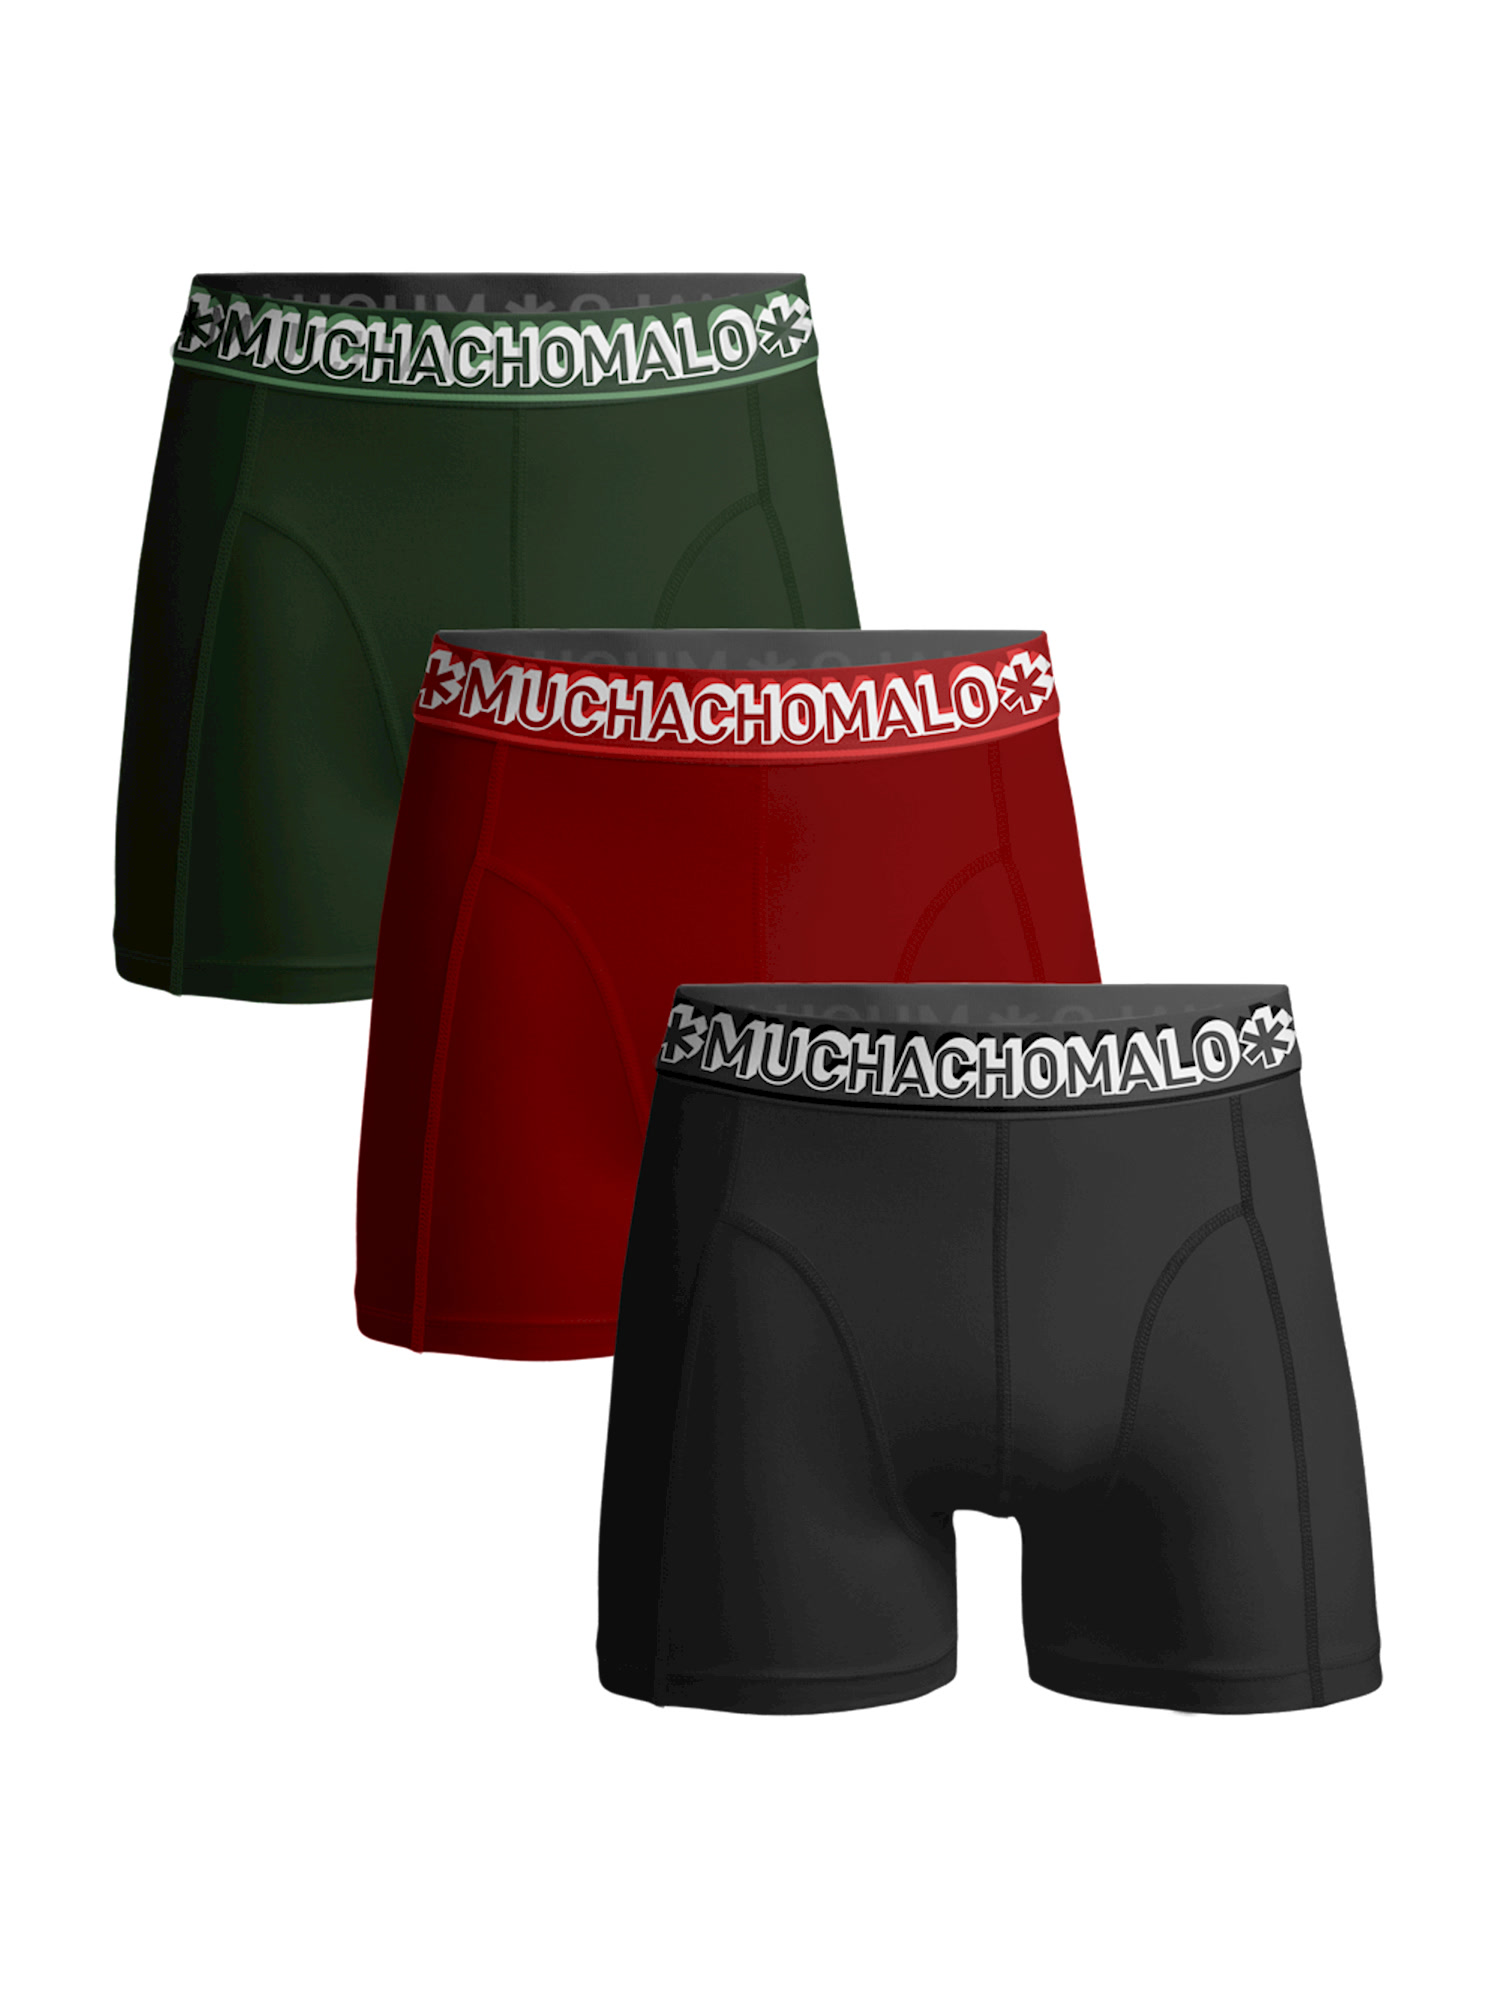 Боксеры Muchachomalo 3er-Set: Boxershorts, цвет Green/Red/ боксеры muchachomalo 5er set boxershorts цвет black blue blue green green